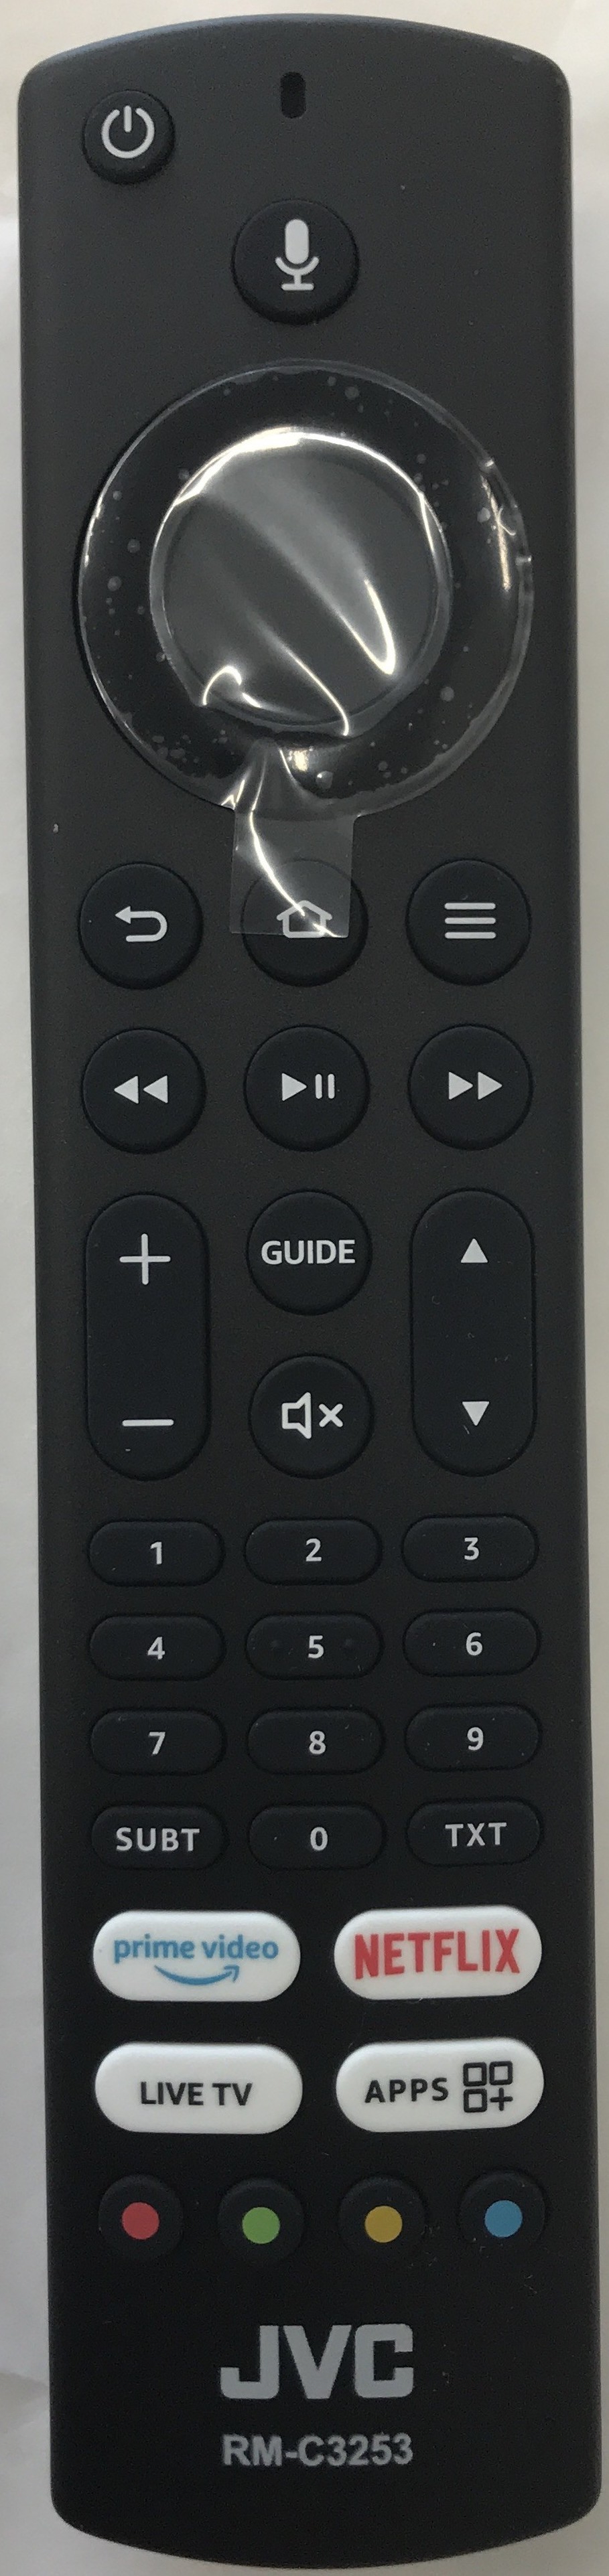 JVC RM-C3253 Smart Remote Control Original 